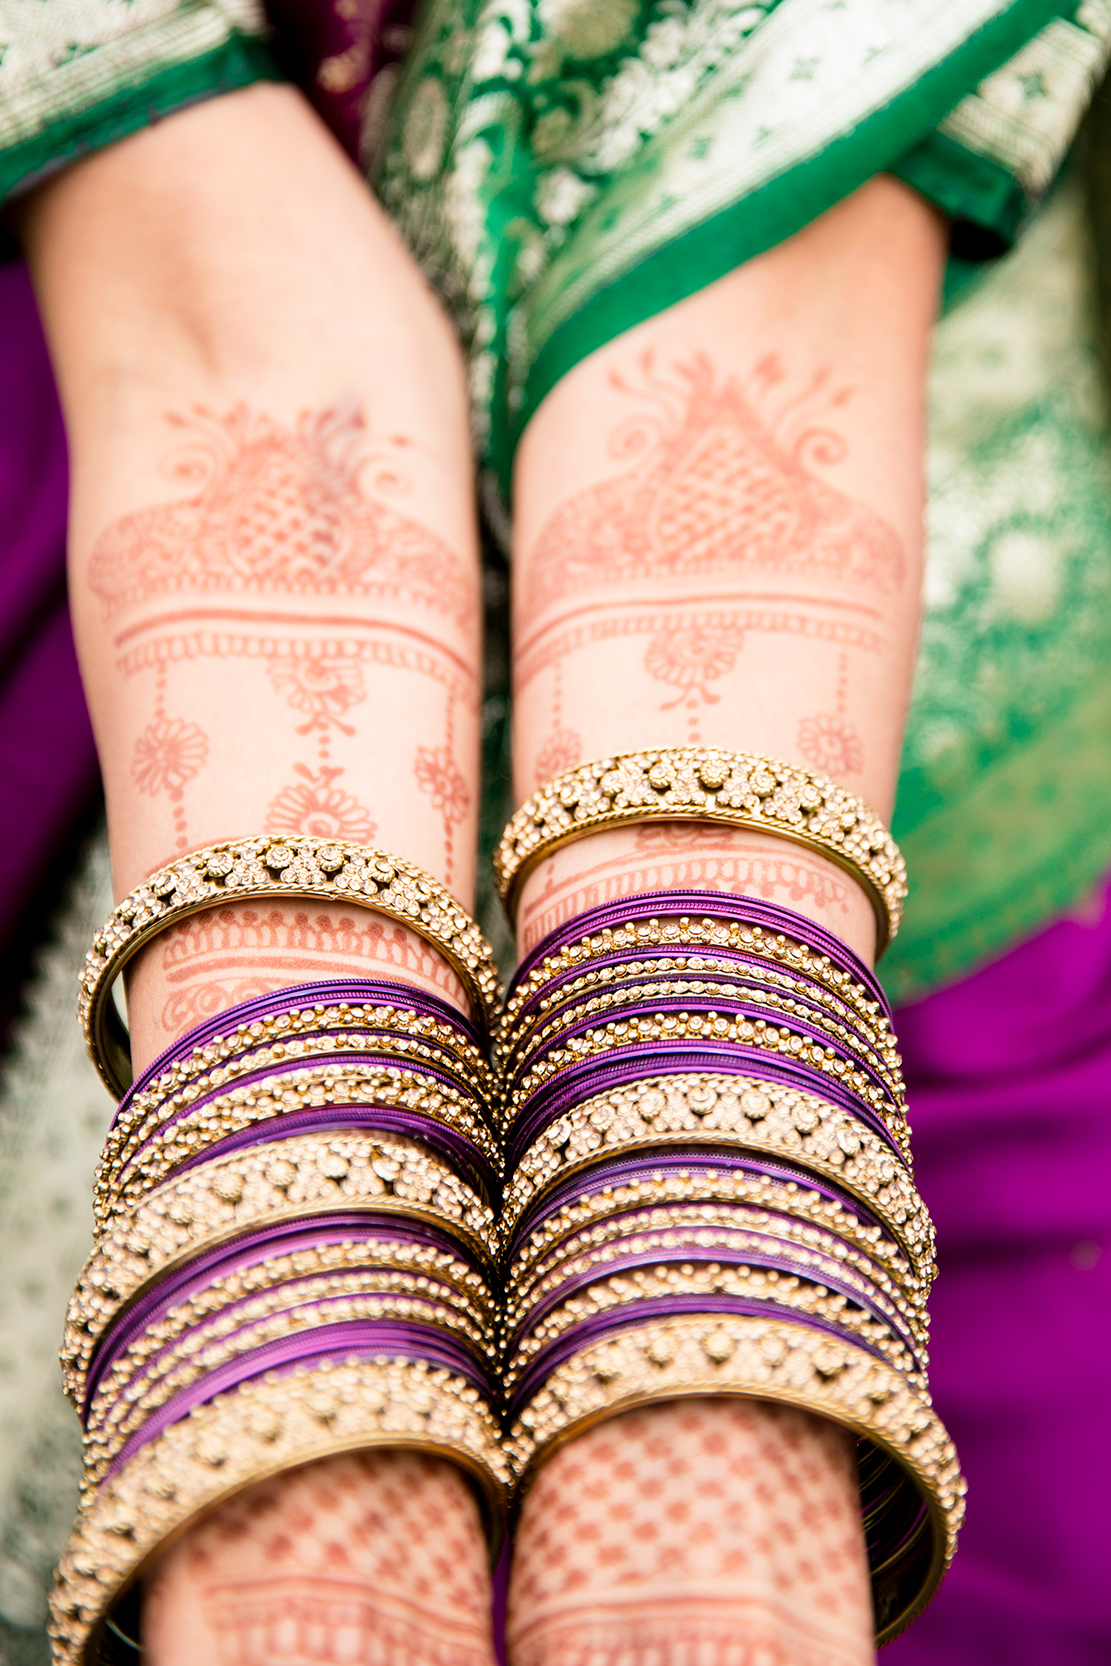 Manisha  Matts Colorful Indian Wedding - Image Property of www.j-dphoto.com